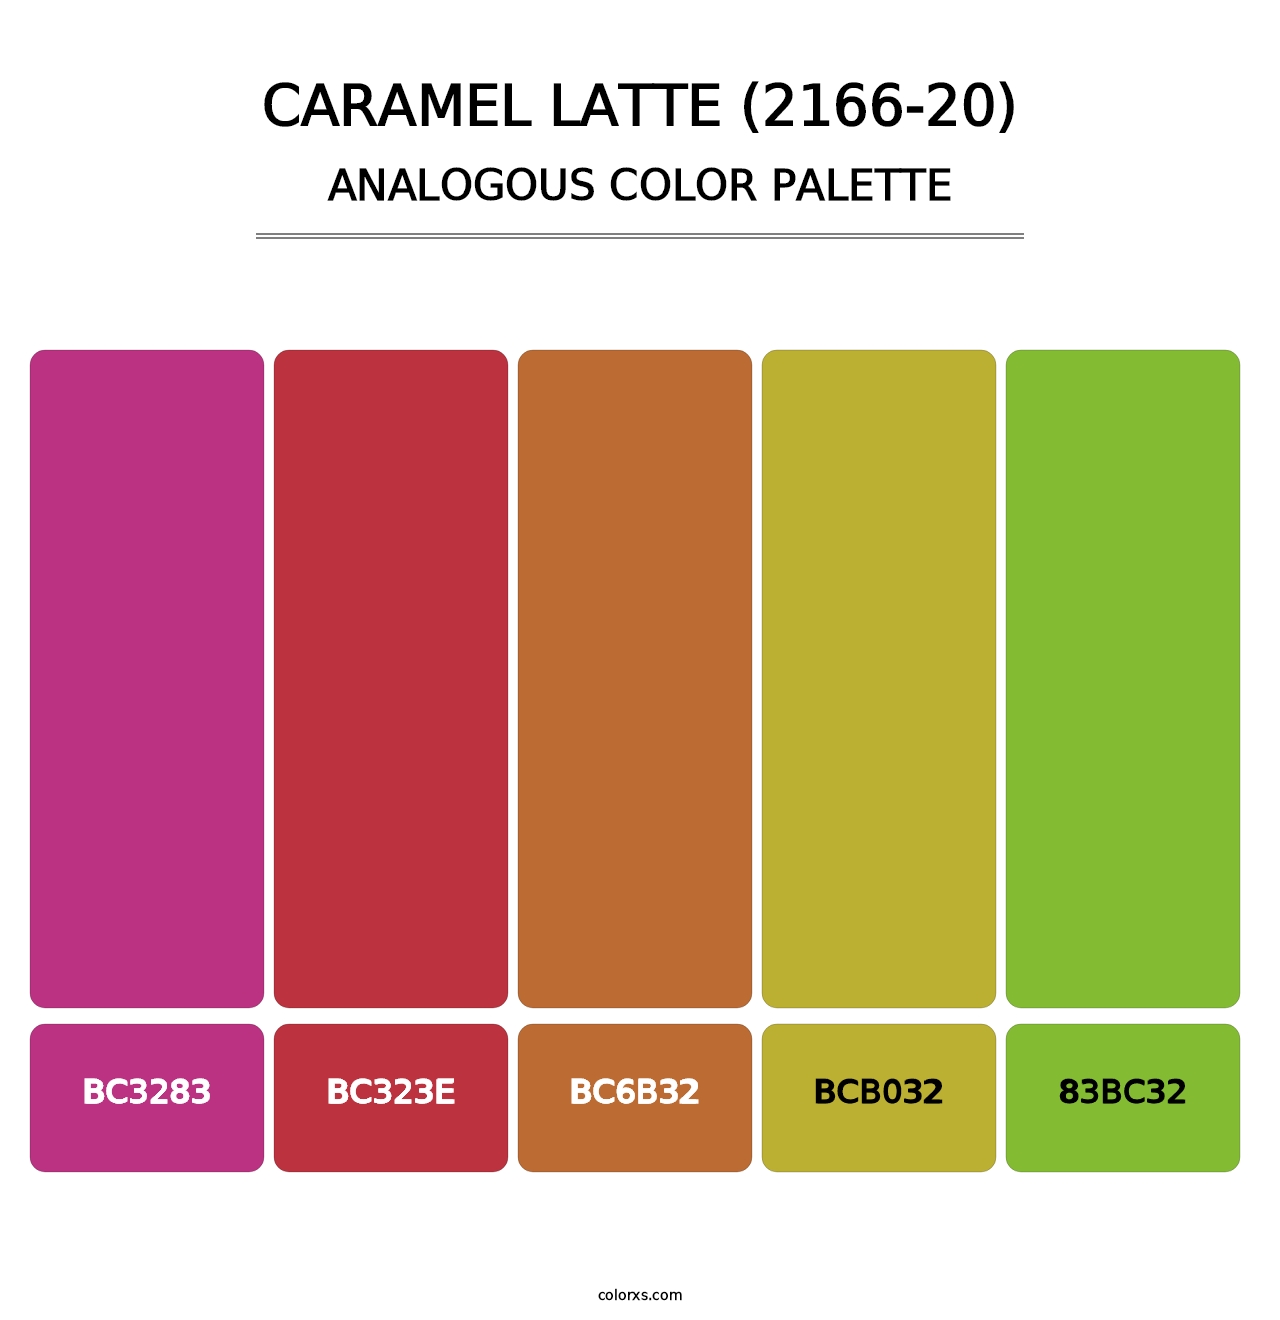 Caramel Latte (2166-20) - Analogous Color Palette